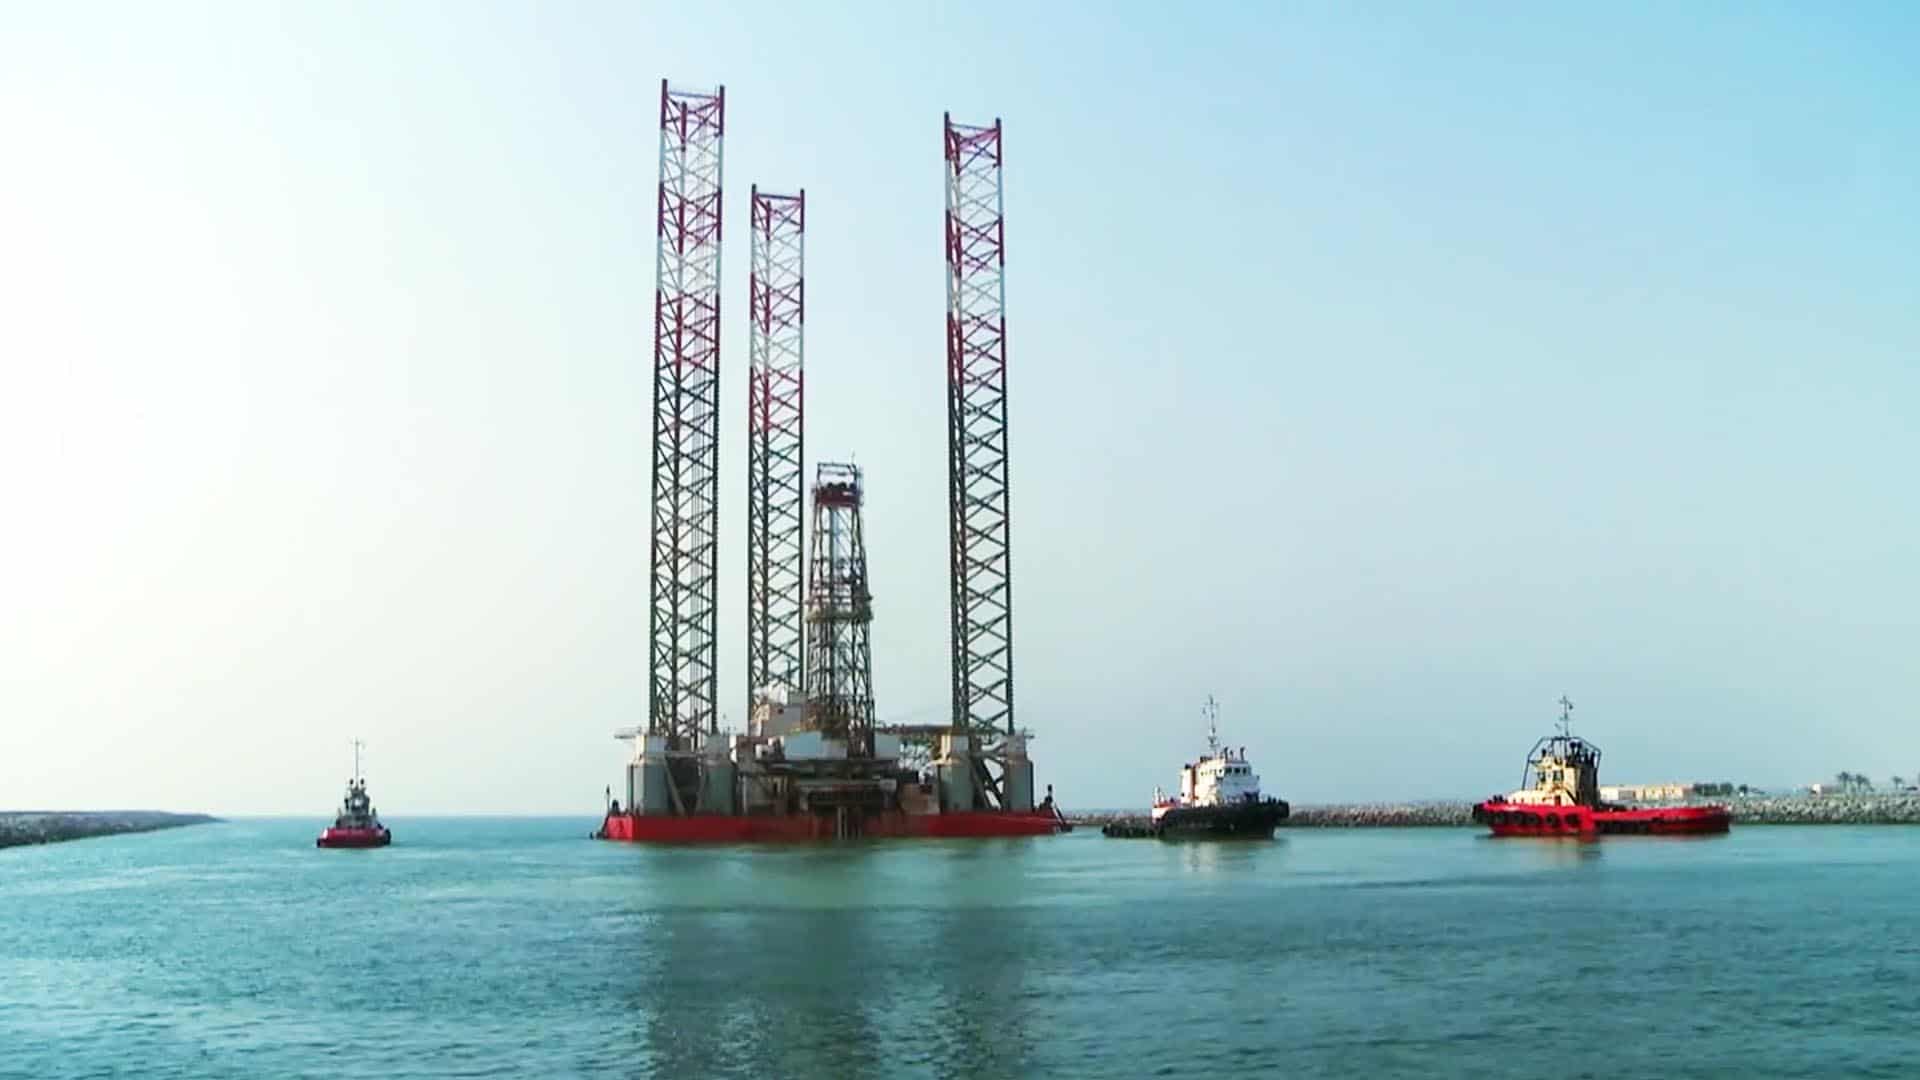 Corporate video for Oil Companies in Dubai